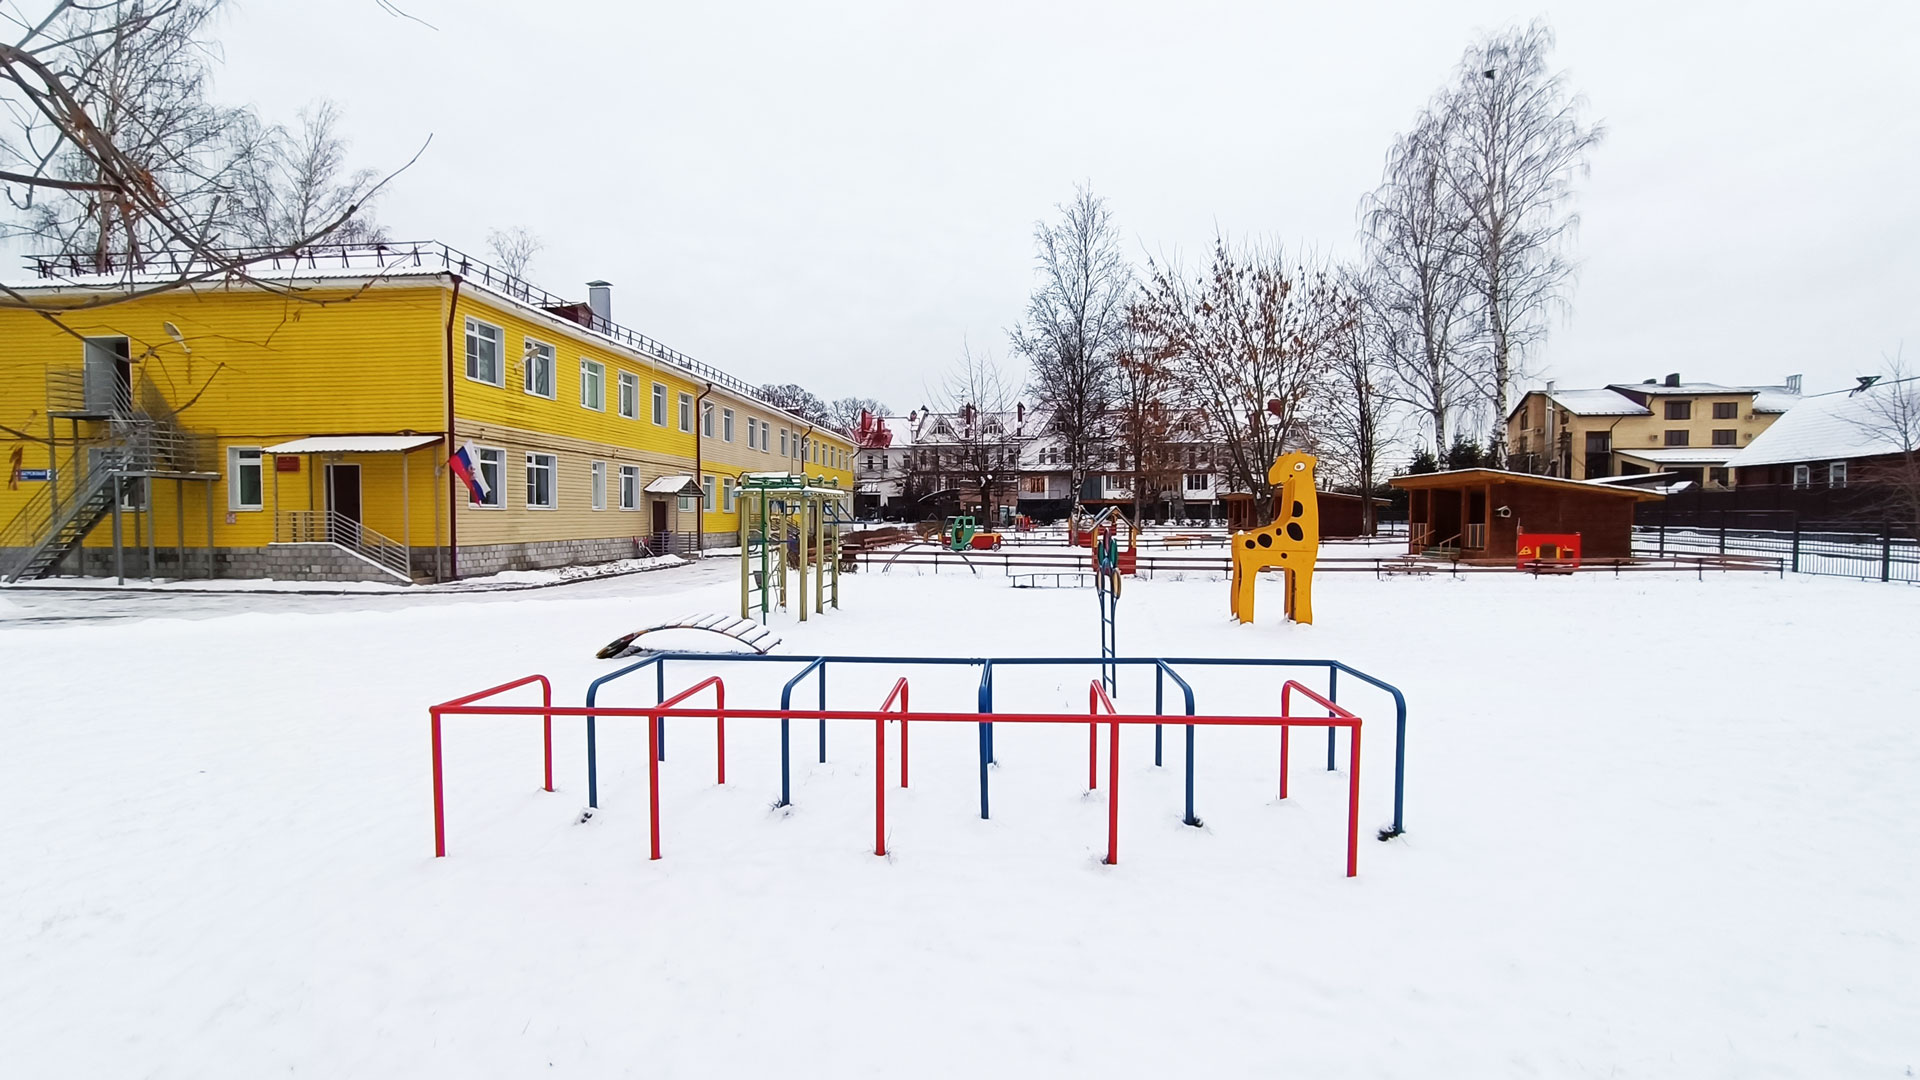 Детский сад 173 Ярославль: общий вид здания.